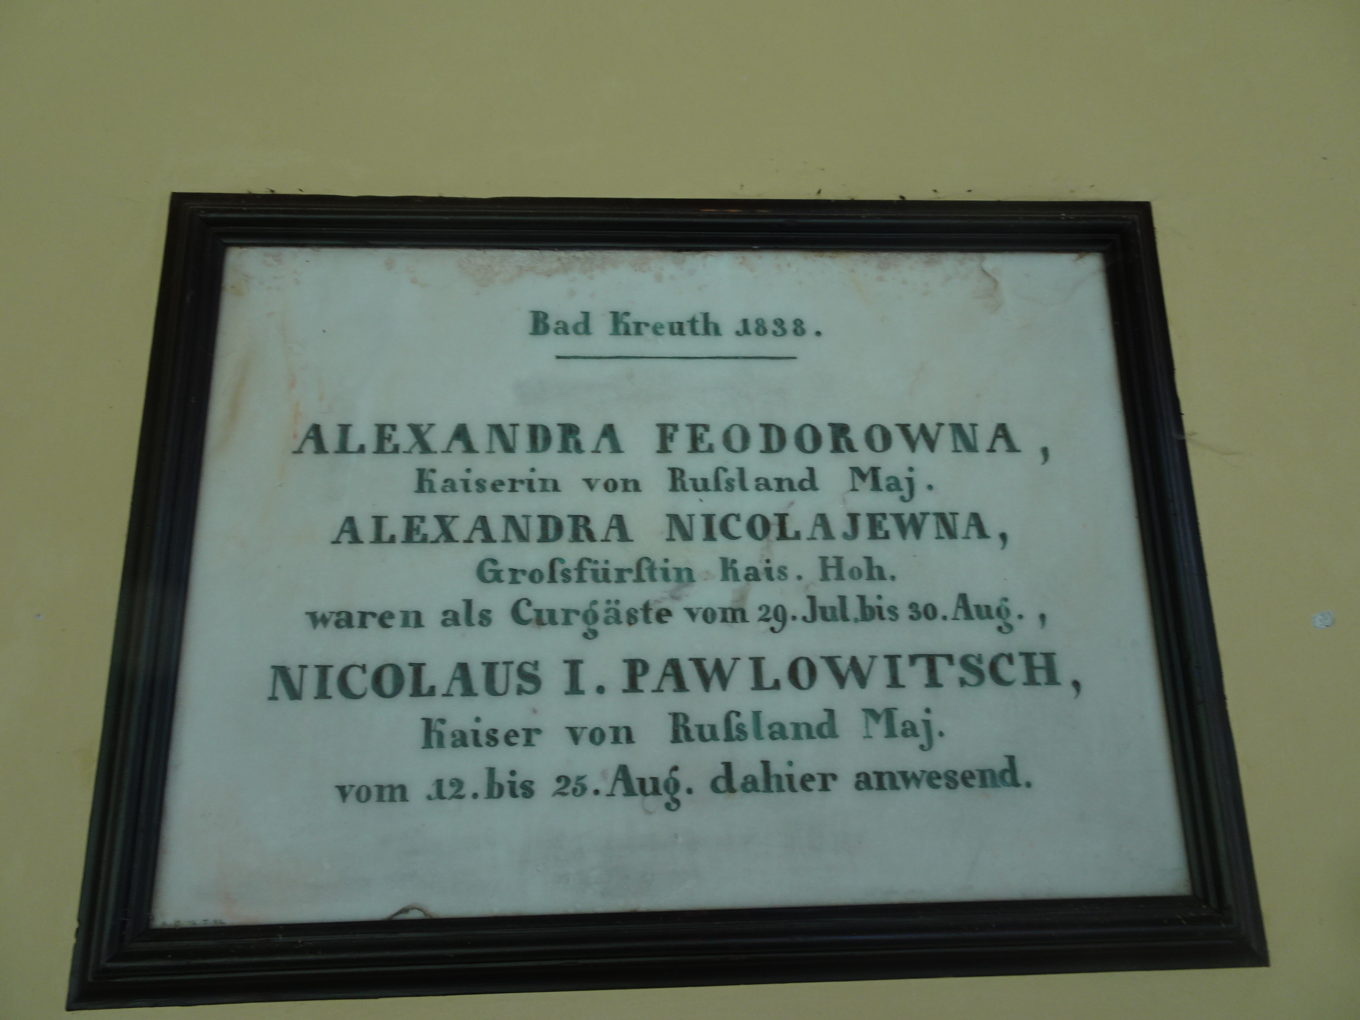 Tablica upamiętniająca pobyt w Bad Kreuth cara Rosji Mikołaja I z rodziną w 1838 roku